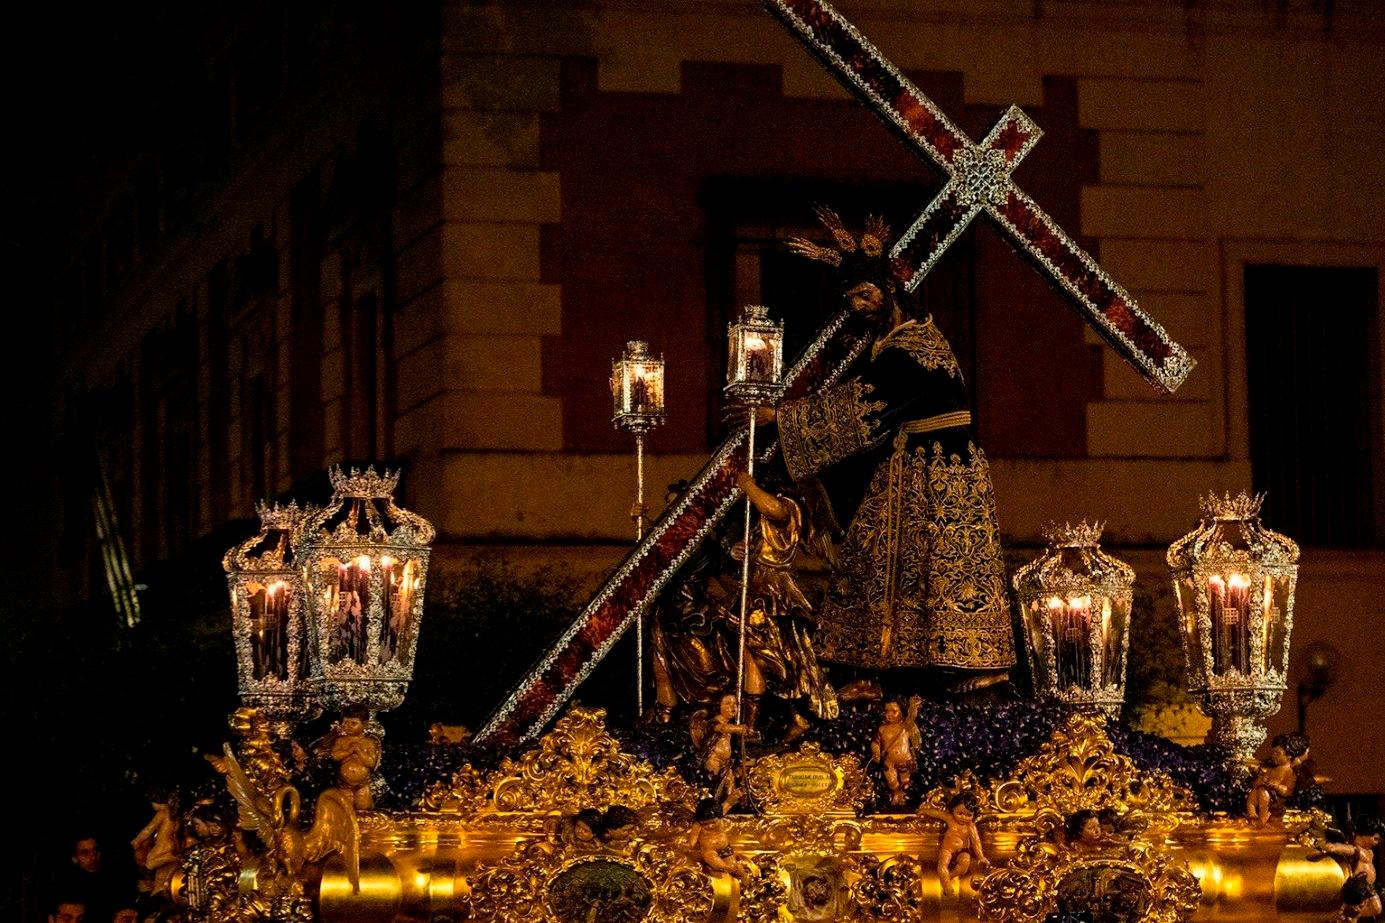 Estas son las procesiones de Semana Santa más conocidas de España Silencio-2023-07-21-a_21160633_20230721110158